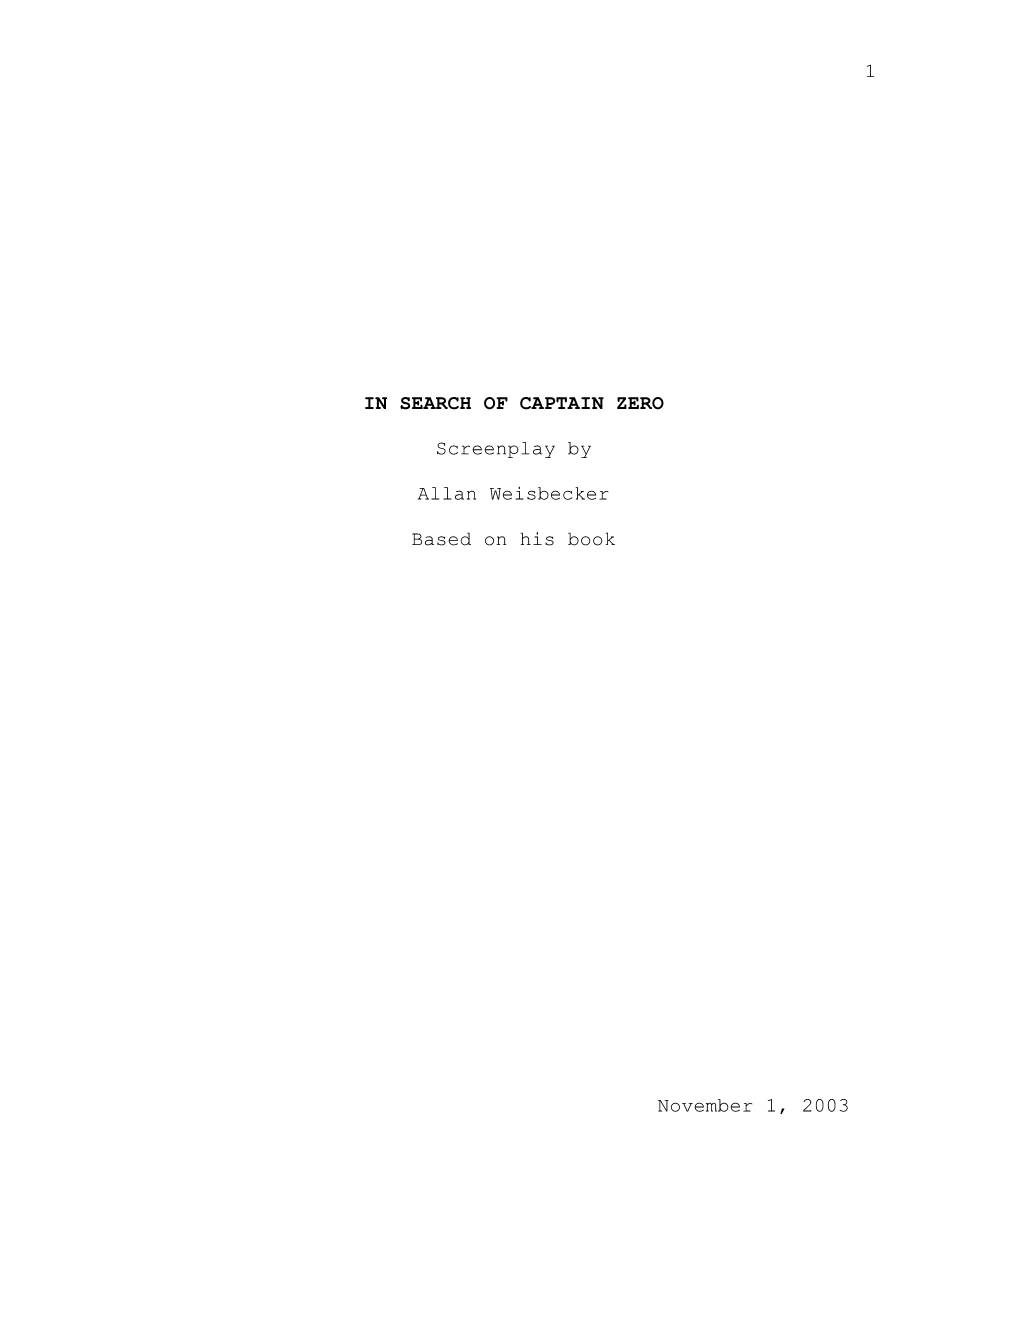 1 in SEARCH of CAPTAIN ZERO Screenplay by Allan Weisbecker